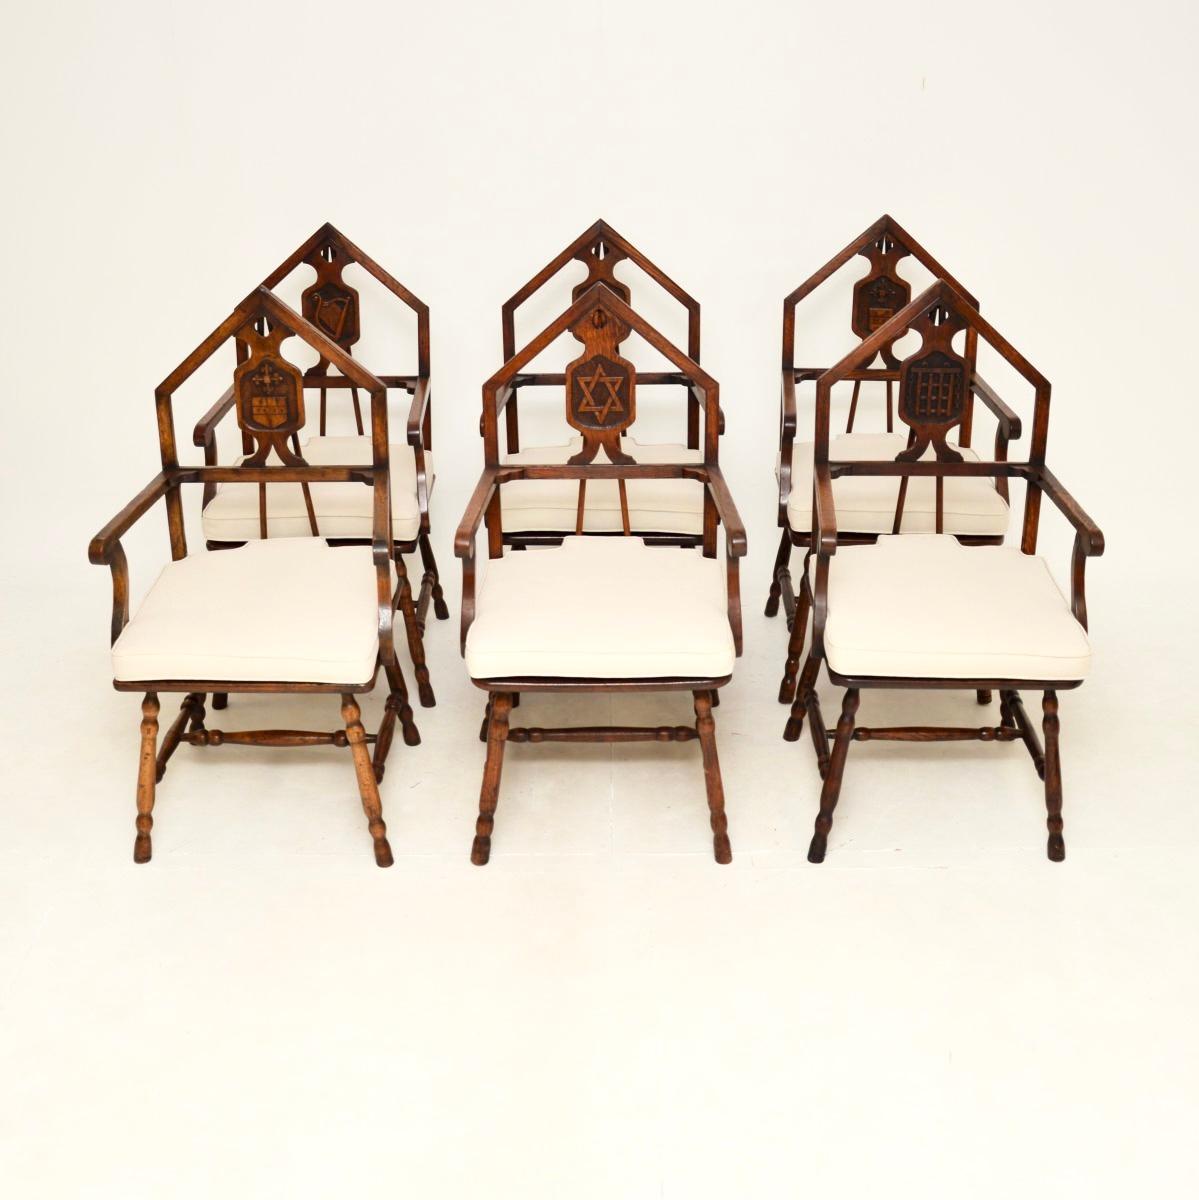 Eine hervorragende Reihe von sechs antiken viktorianischen Eiche Freimaurer Esszimmerstühle. Sie wurden in England hergestellt und stammen aus der Zeit zwischen 1880 und 1900.

Sie sind von hervorragender Qualität und haben ein äußerst interessantes